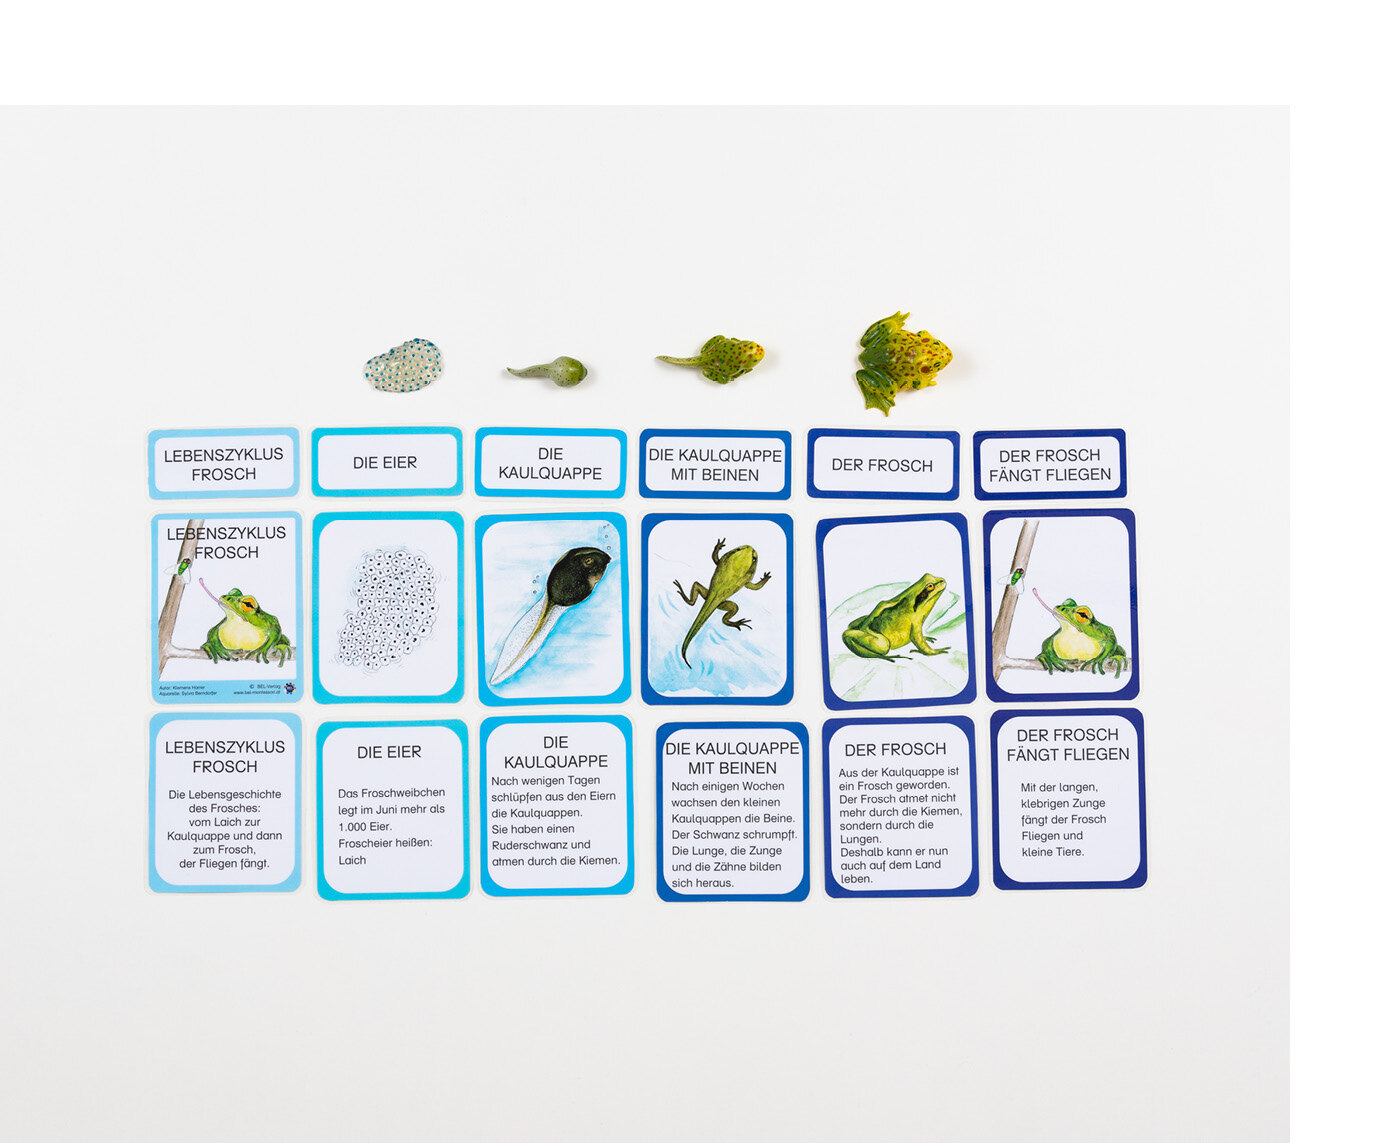 Verschiedene Karten mit Worten, Abbildungen von Fröschen und Beschreibungen darauf, liegen geordnet nebeneinander. Darüber Kunststofffiguren eines Frosches.